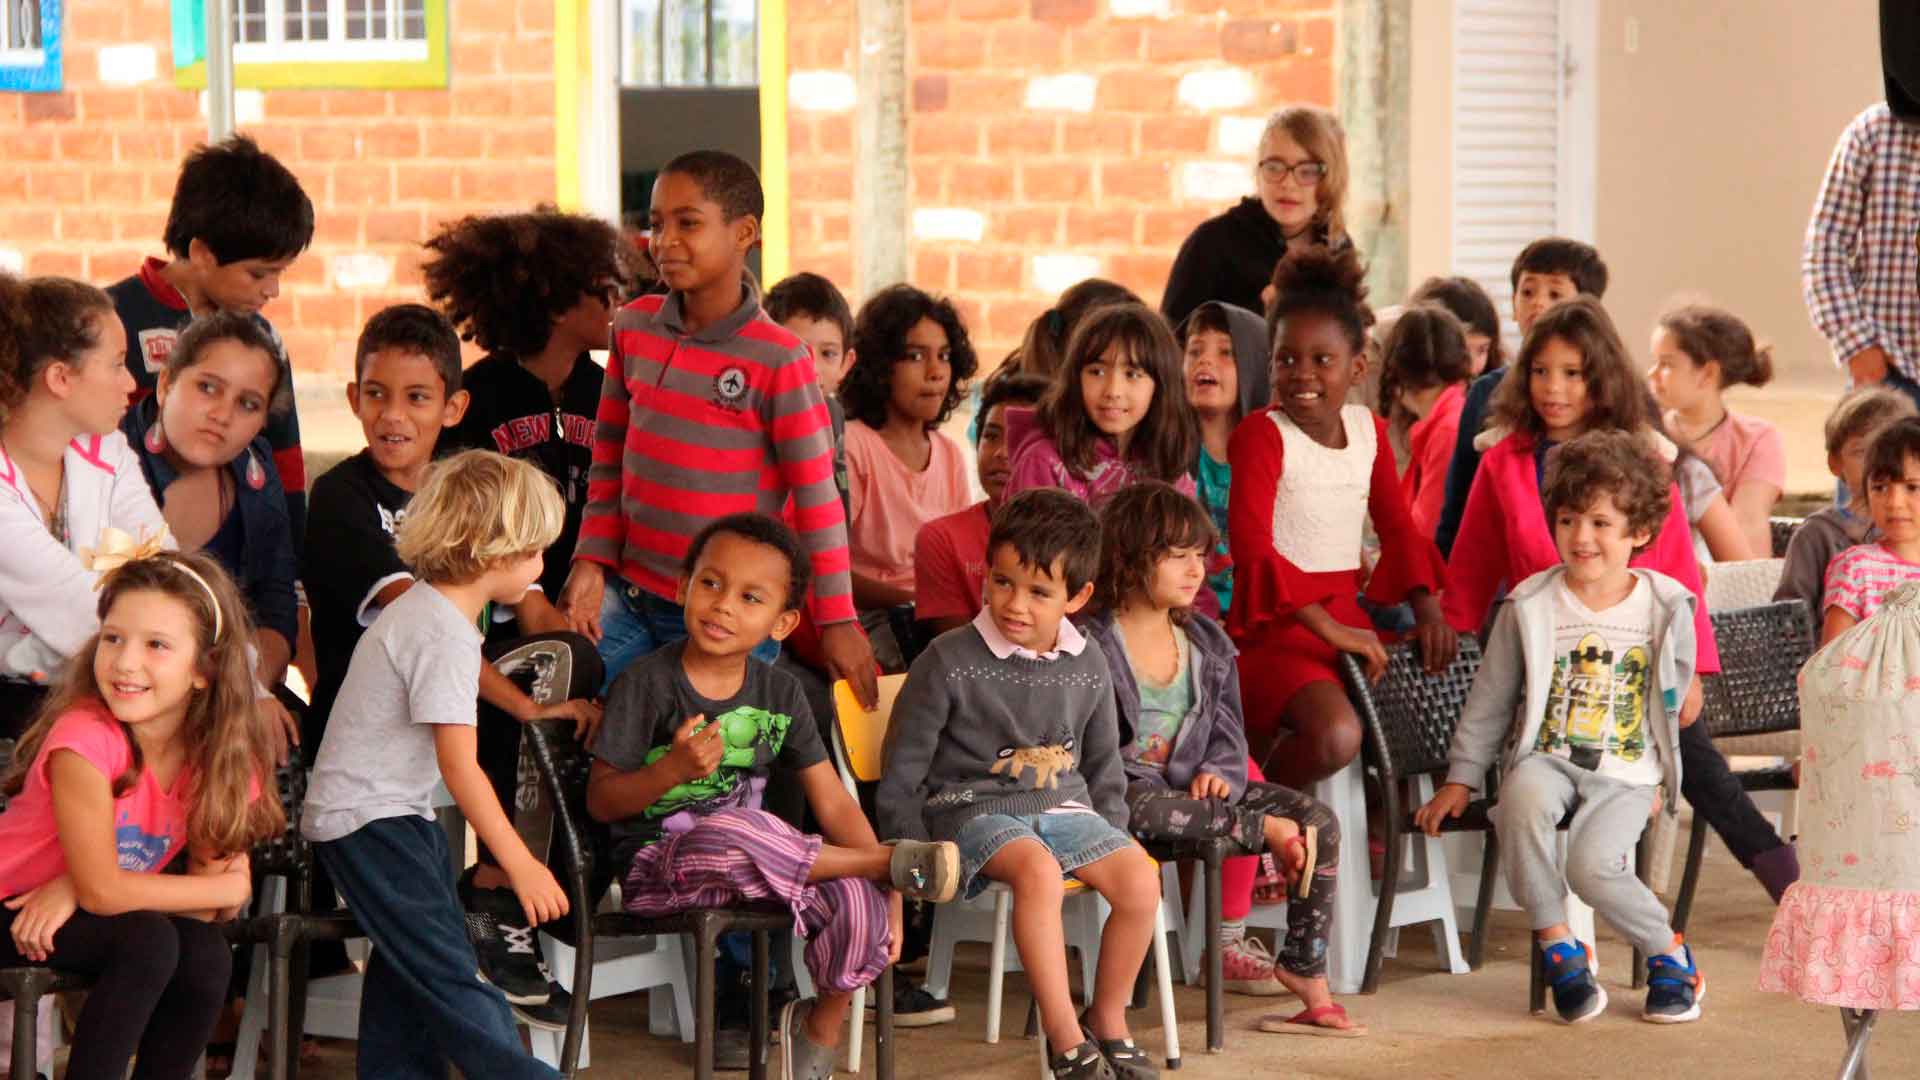 Foto de um grupo de mais de 15 crianças, algumas sentadas e outras em pé, alinhadas em fileiras horizontais